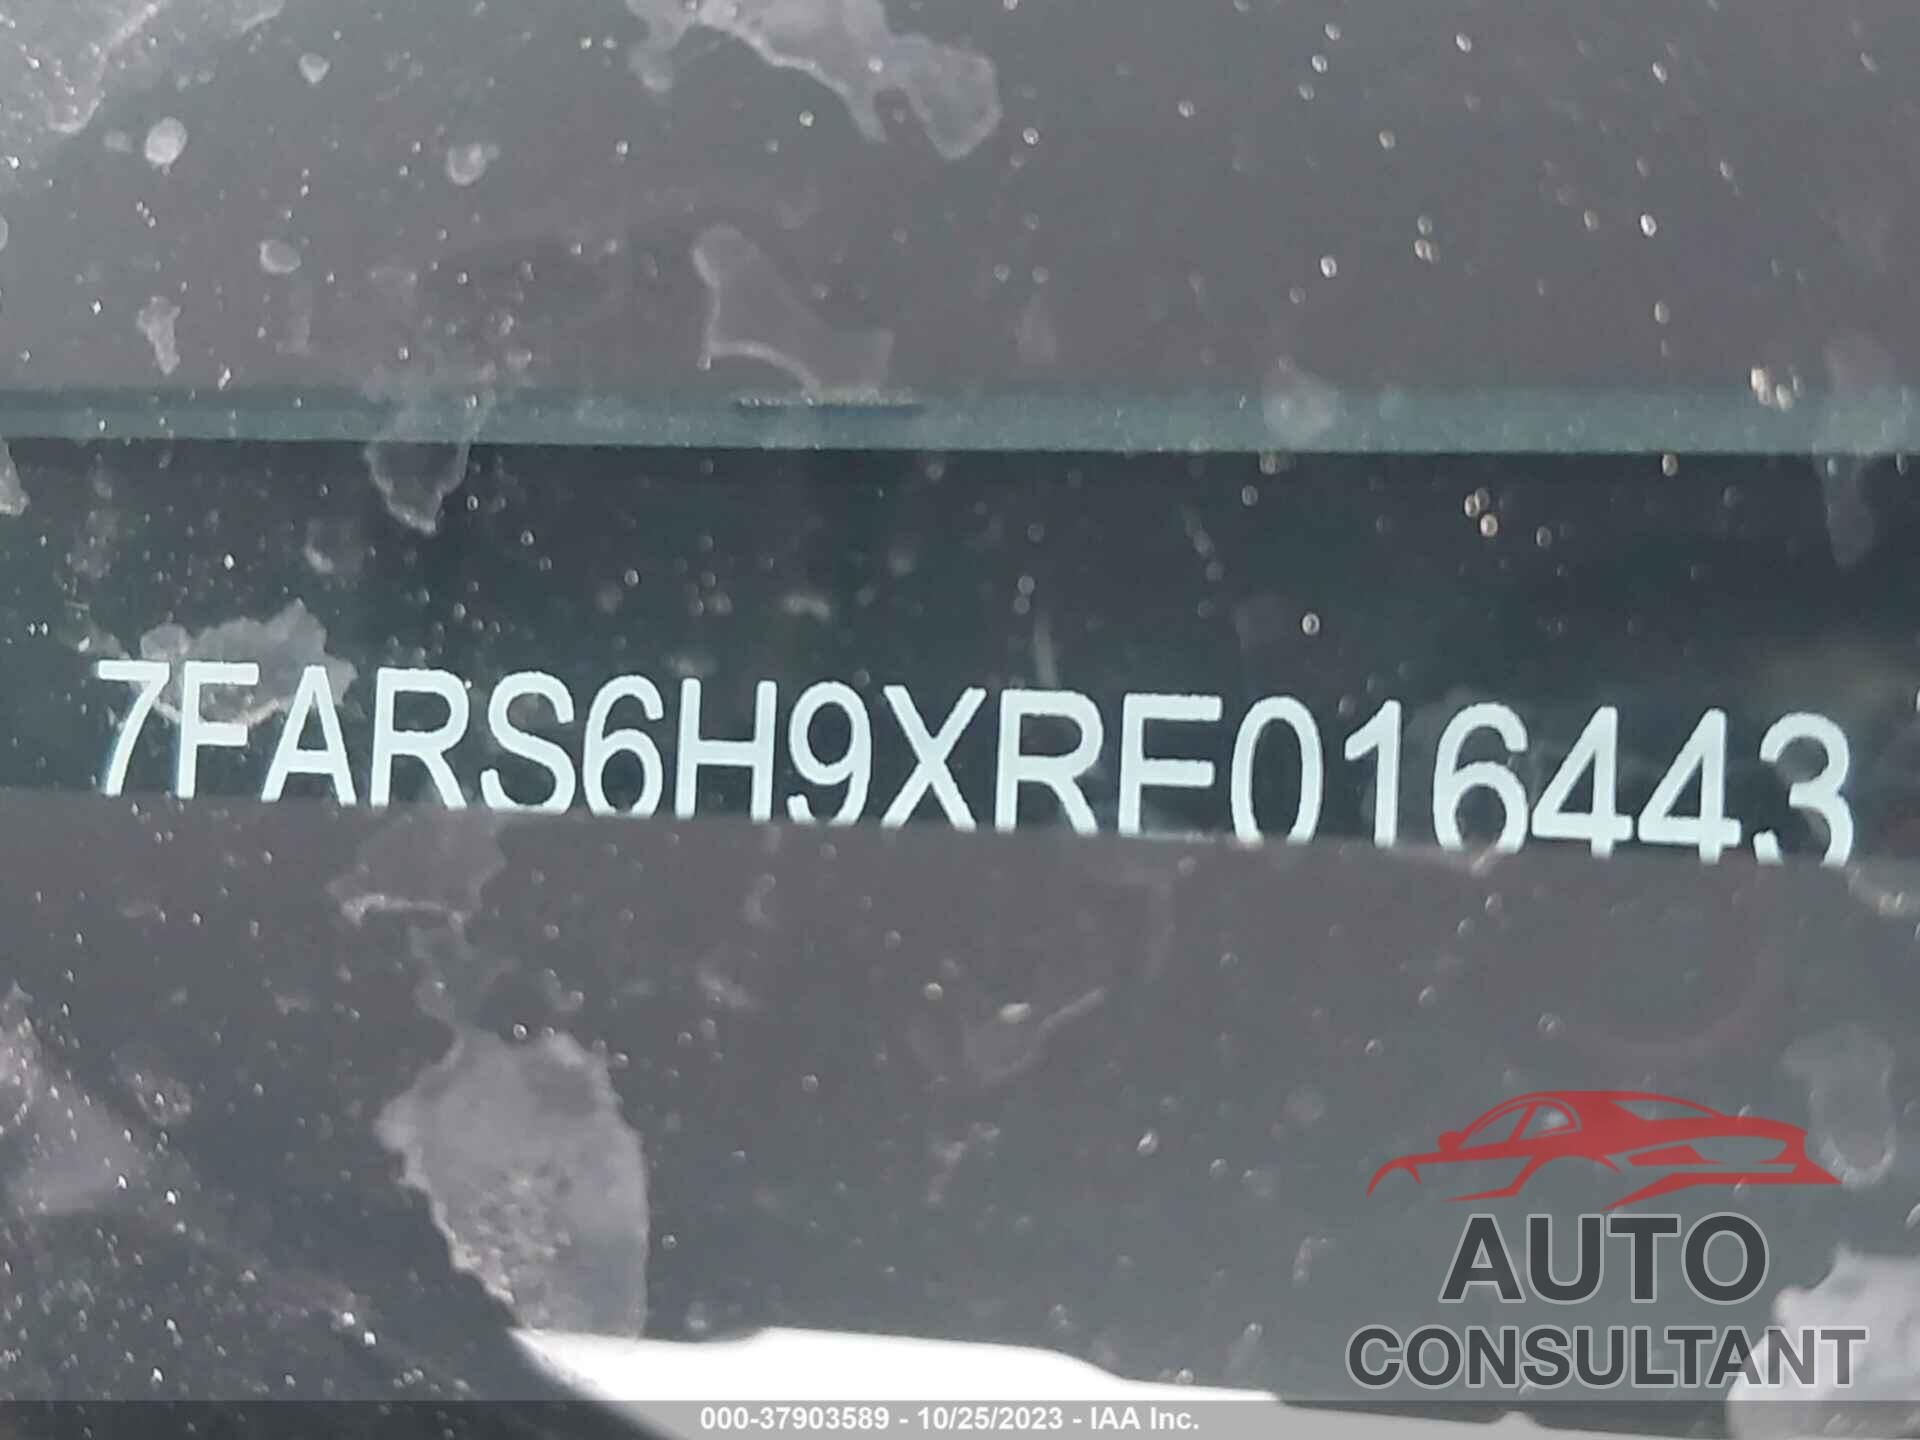 HONDA CR-V HYBRID 2024 - 7FARS6H9XRE016443